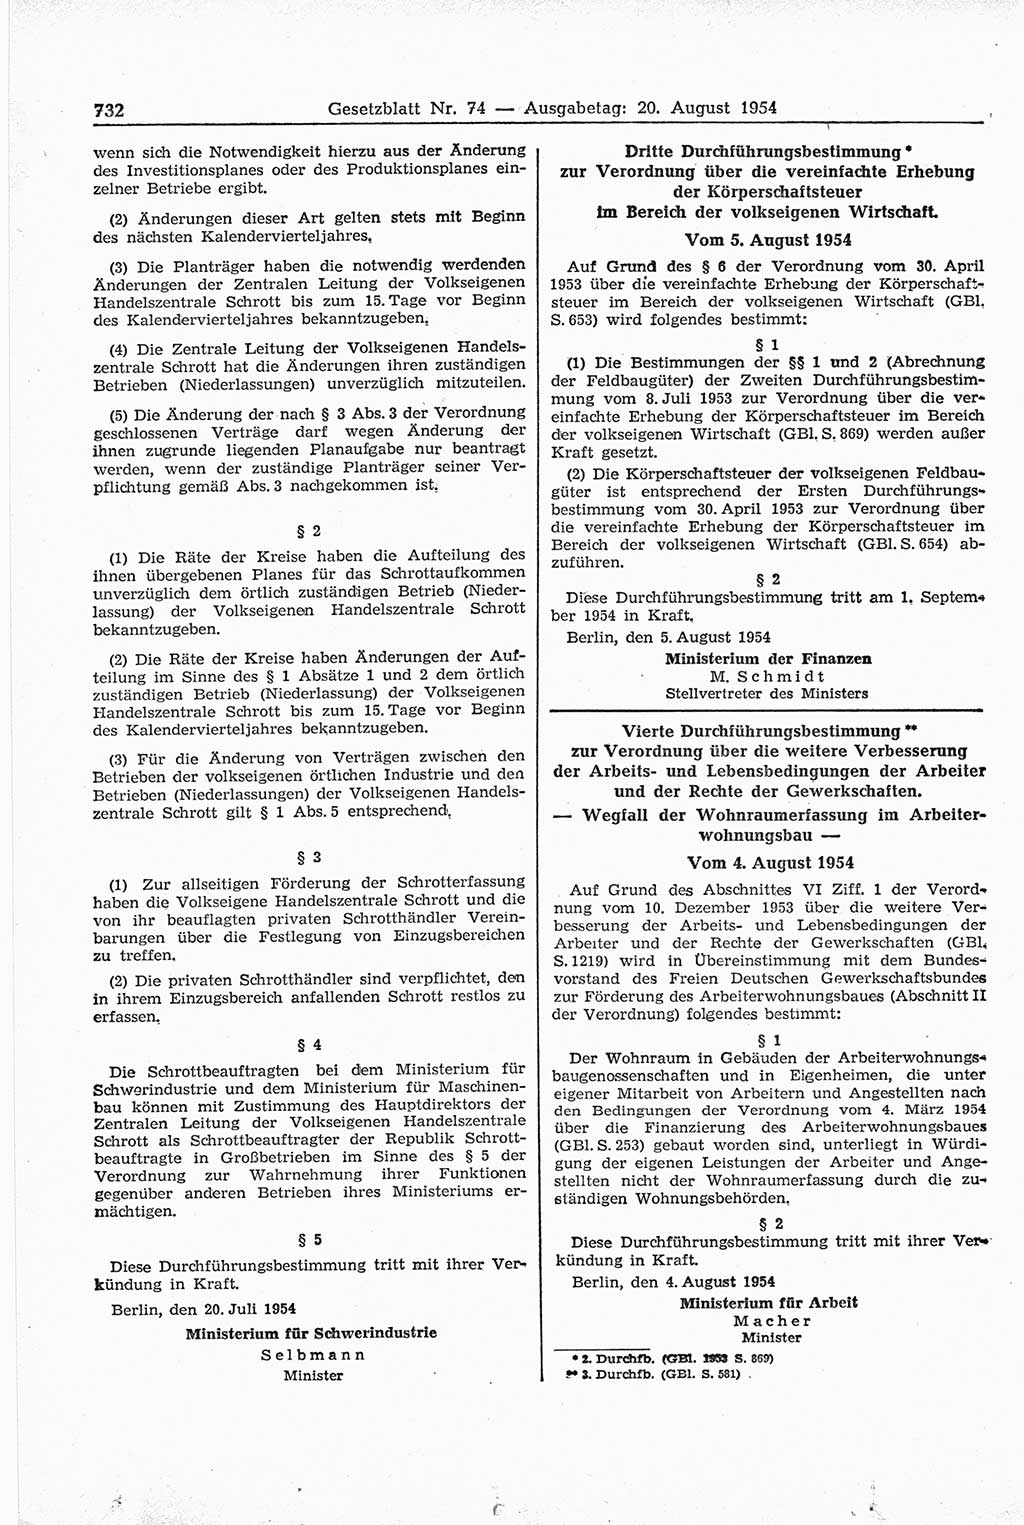 Gesetzblatt (GBl.) der Deutschen Demokratischen Republik (DDR) 1954, Seite 732 (GBl. DDR 1954, S. 732)